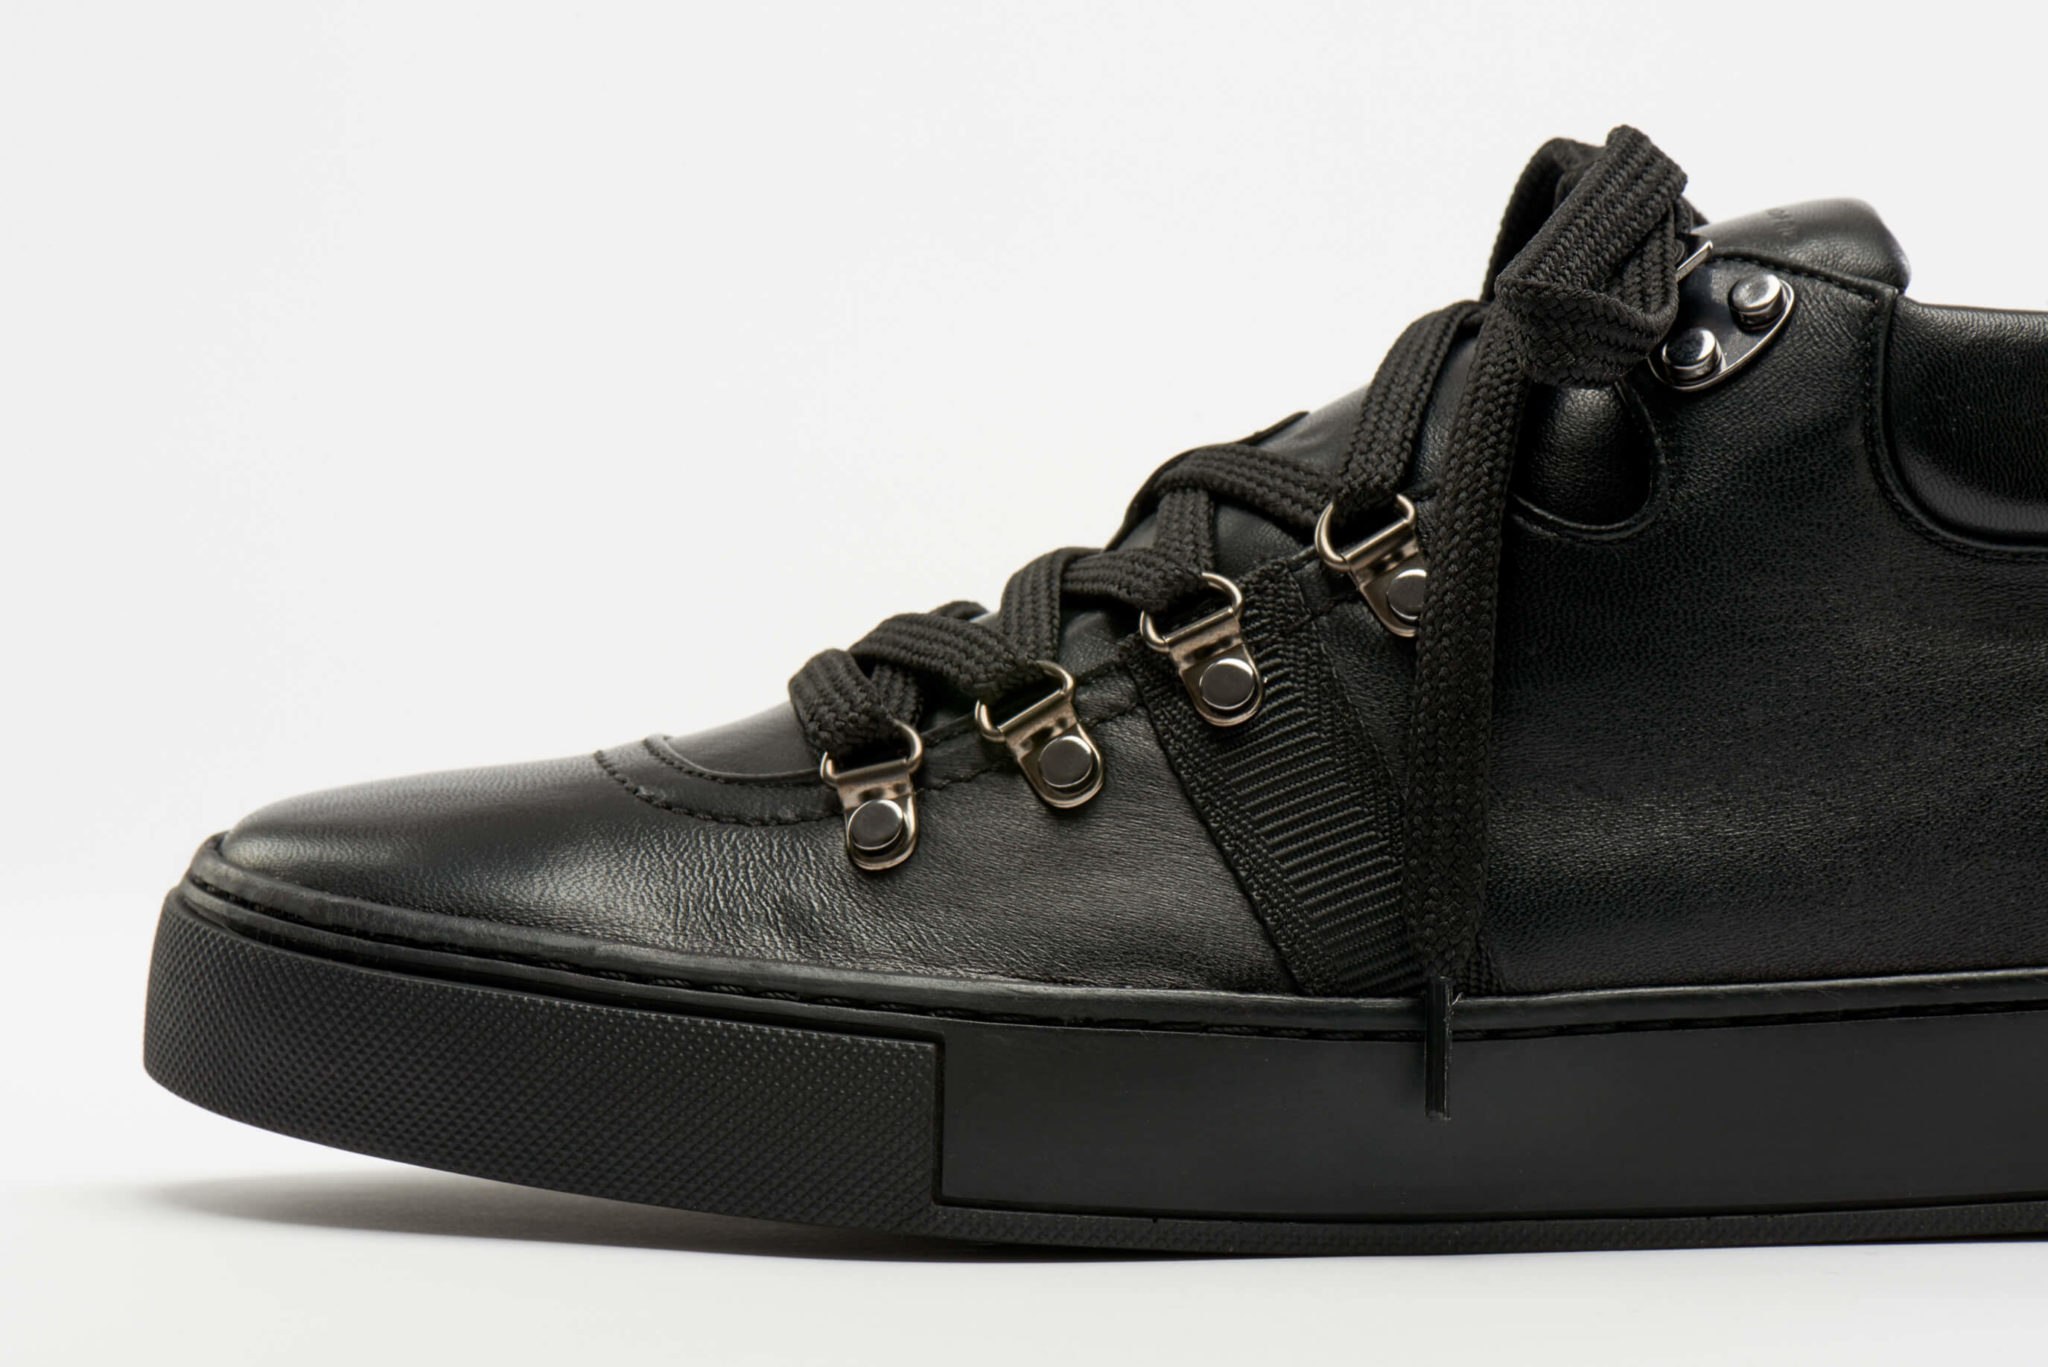 CHAMPOLUC Black - Luis Onofre - Portuguese Design Shoes